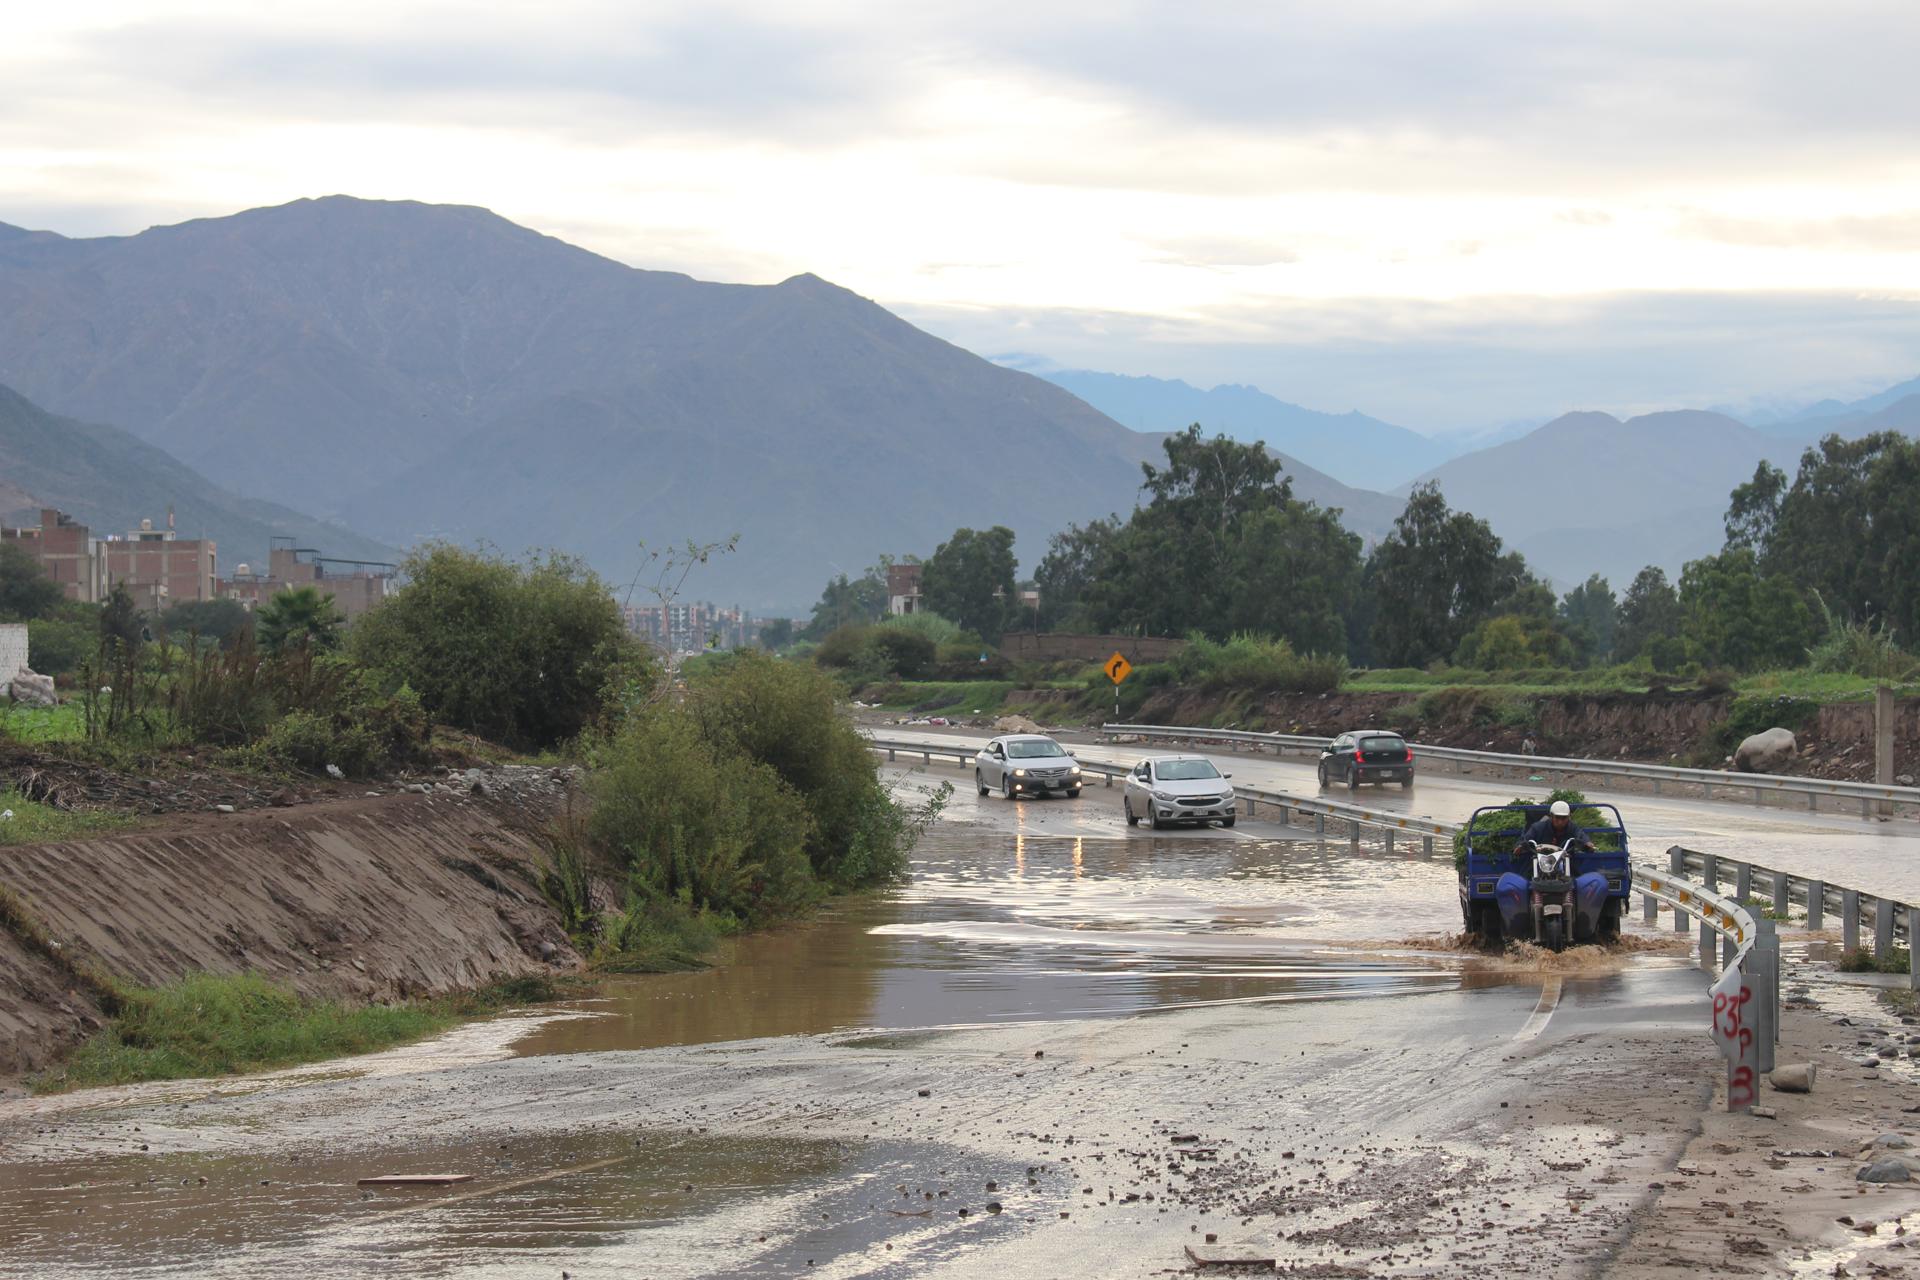 Numerosos han sido los distritos de Lima Metropolitana y regiones afectados por estas avalanchas de lodo, tras la activación de quebradas o desbordes de ríos.